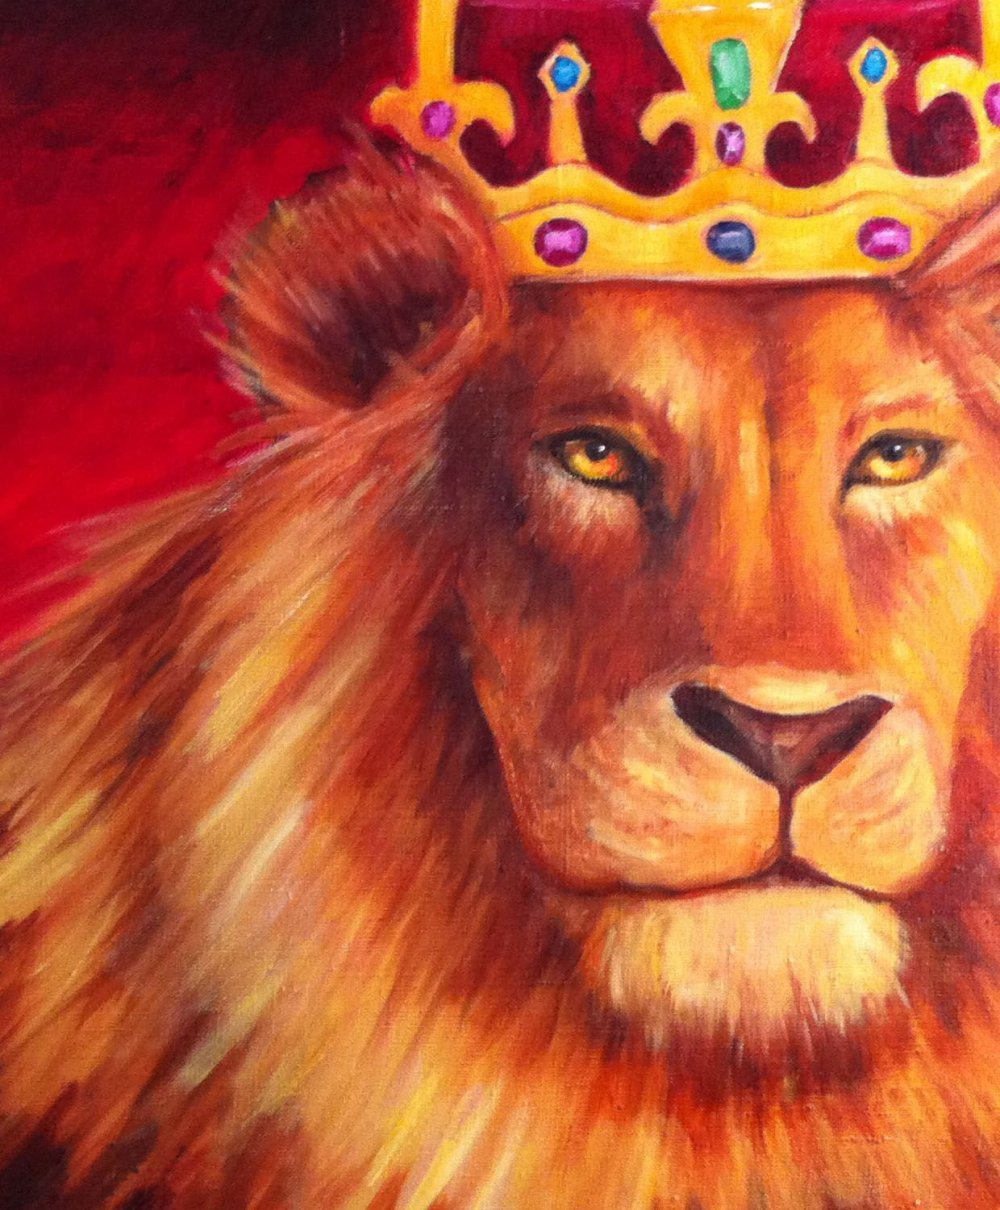 Золотой Лев с короной